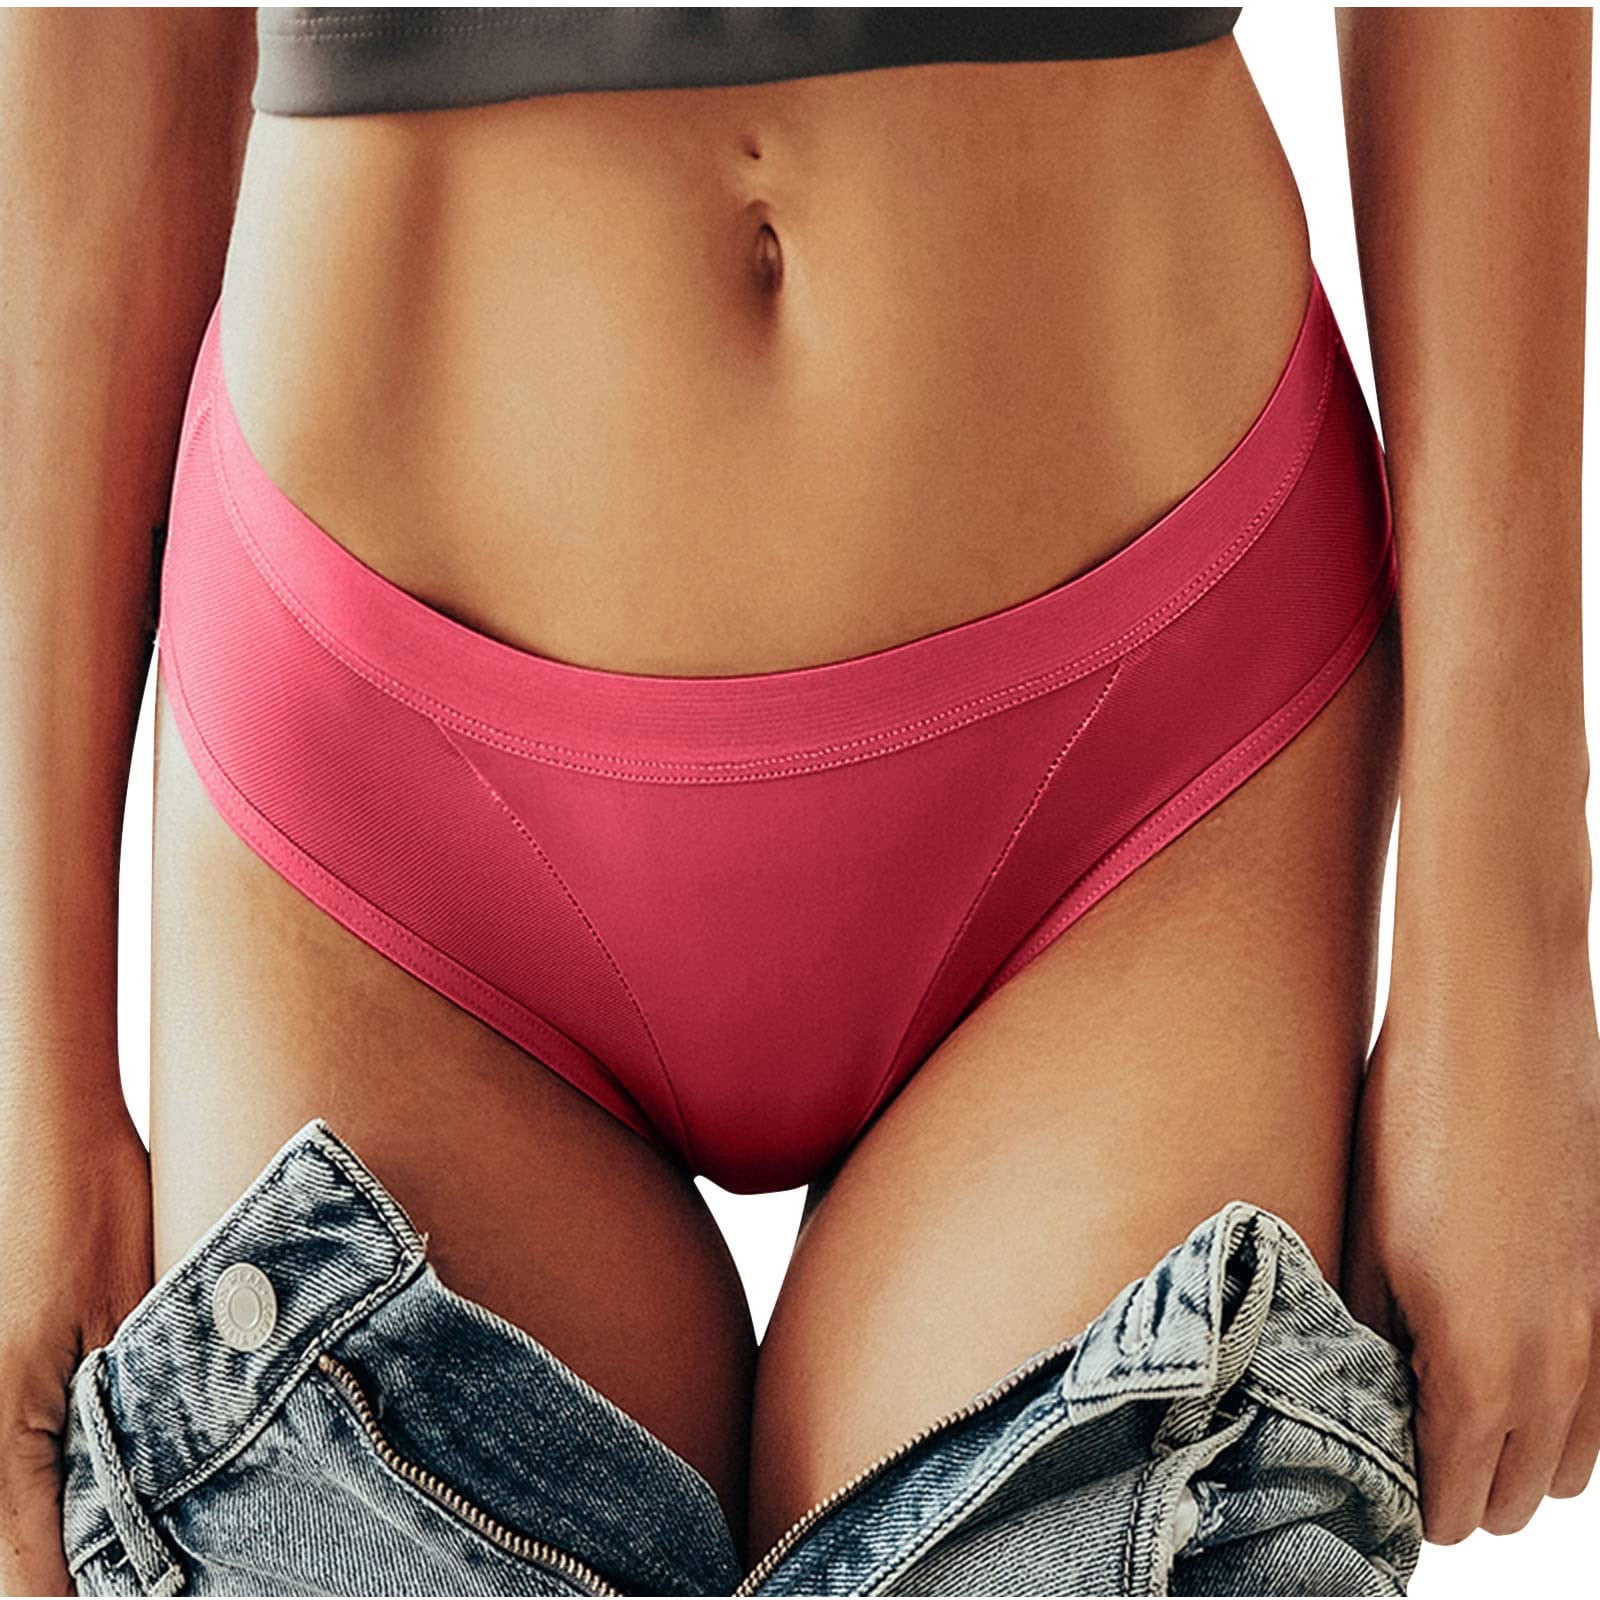 Joyspun Women's Thong Panties, 3-Pack, Sizes XS to 3XL